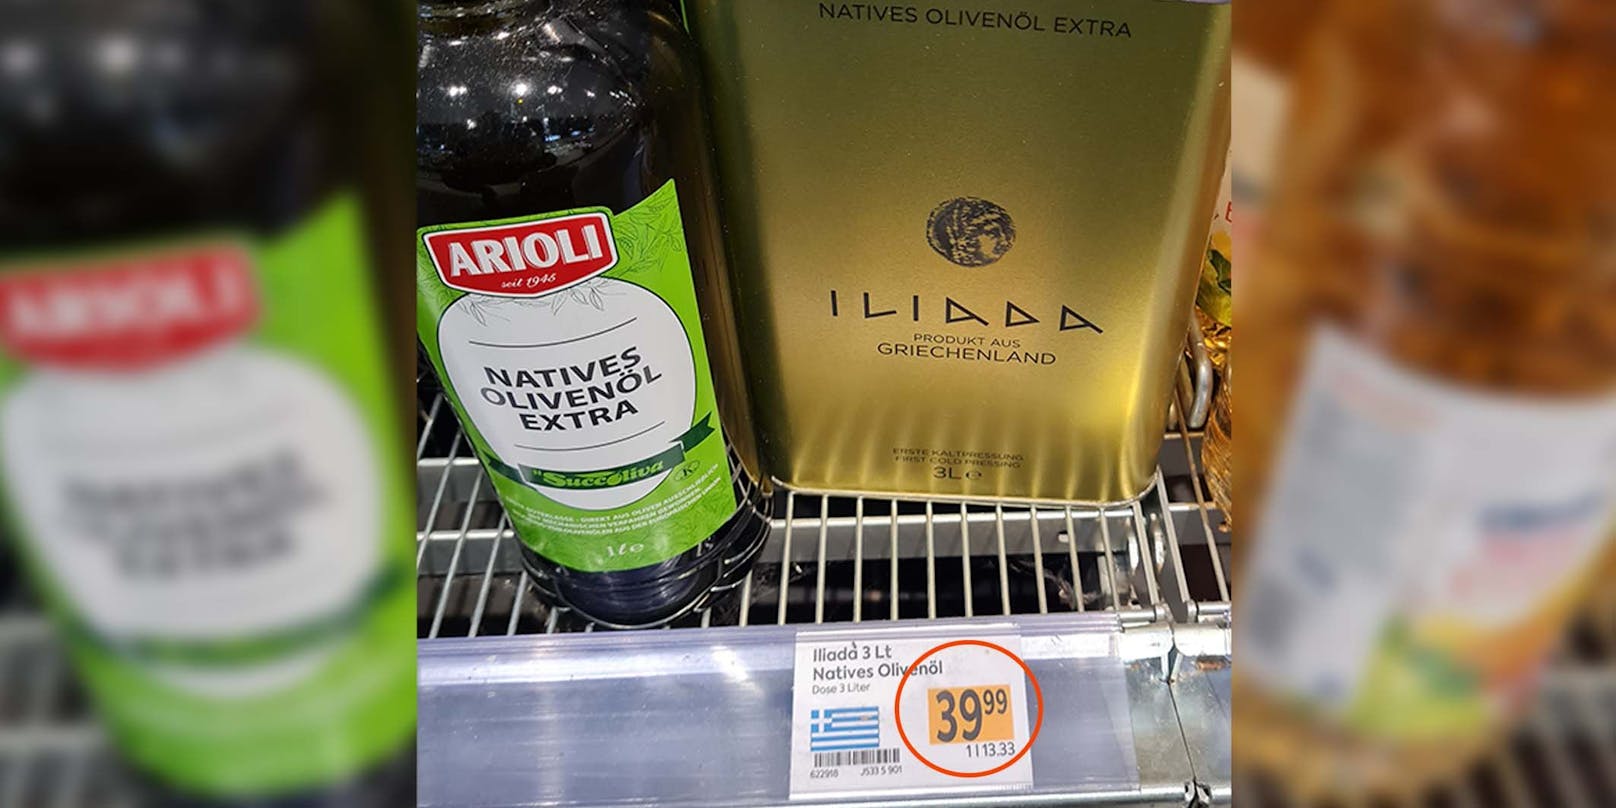 Preis für "Luxus-Olivenöl" stößt bei Wiener übel auf